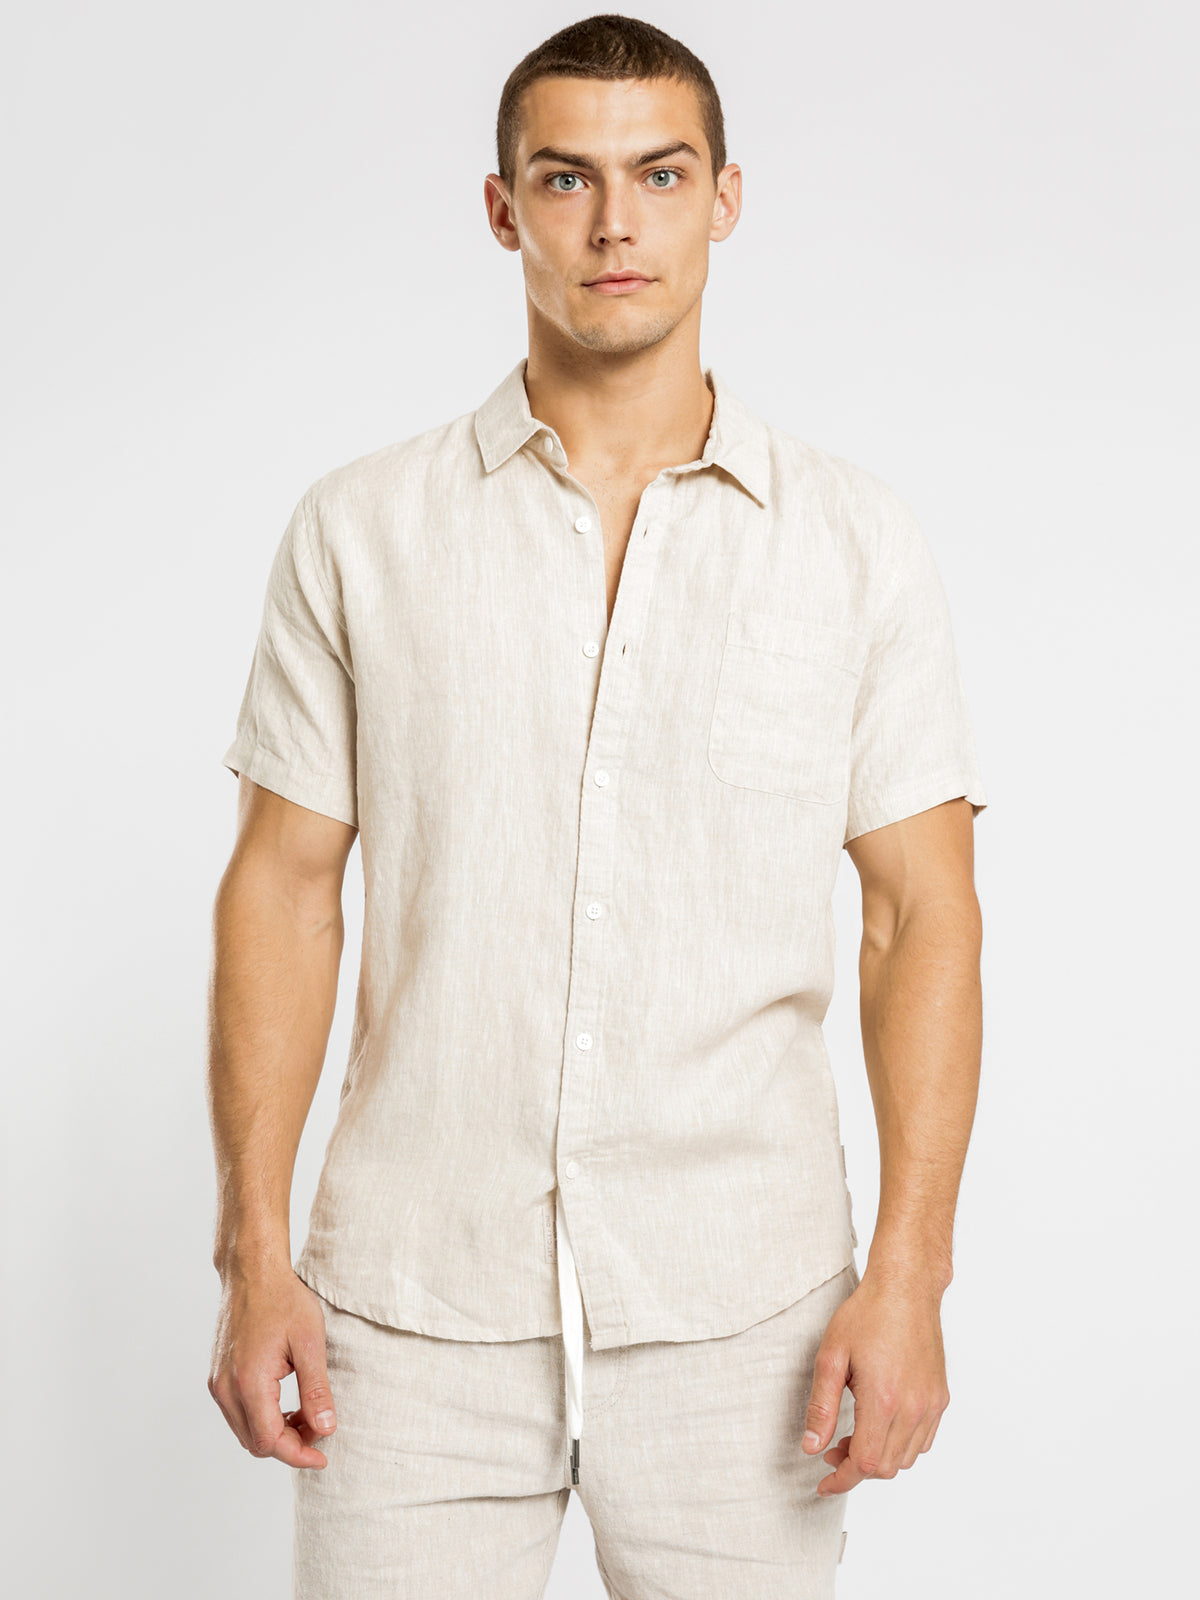 Nelson Linen Short Sleeve Shirt in Natural